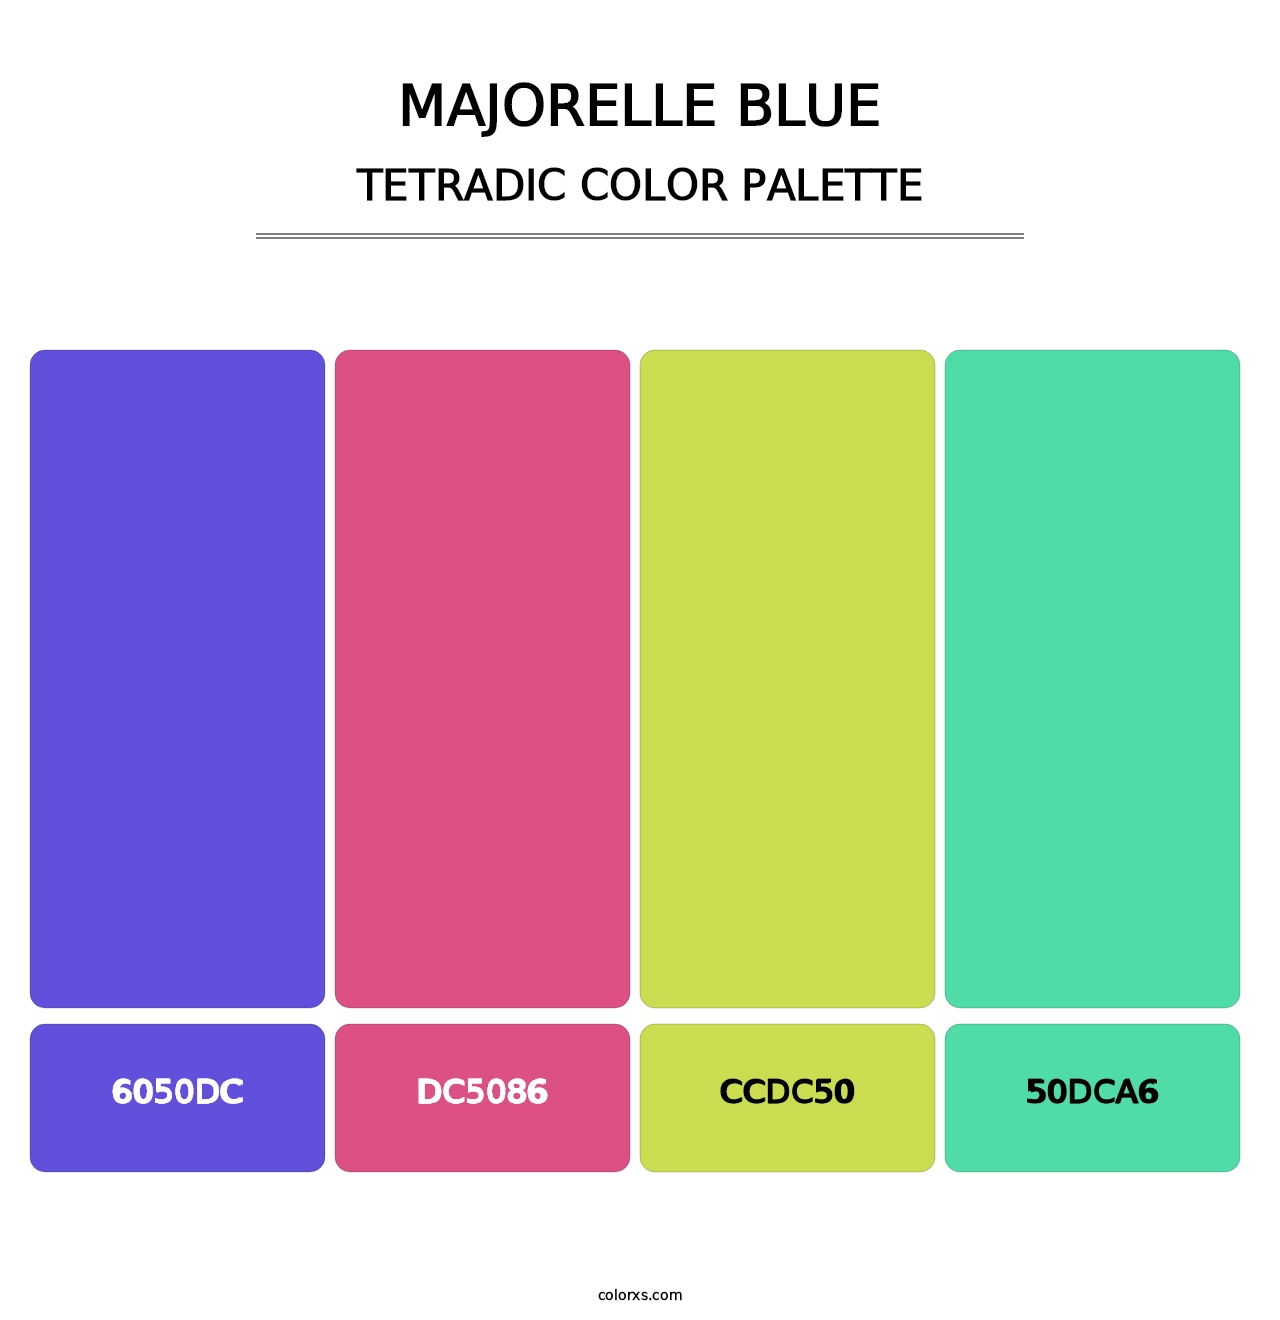 Majorelle Blue - Tetradic Color Palette